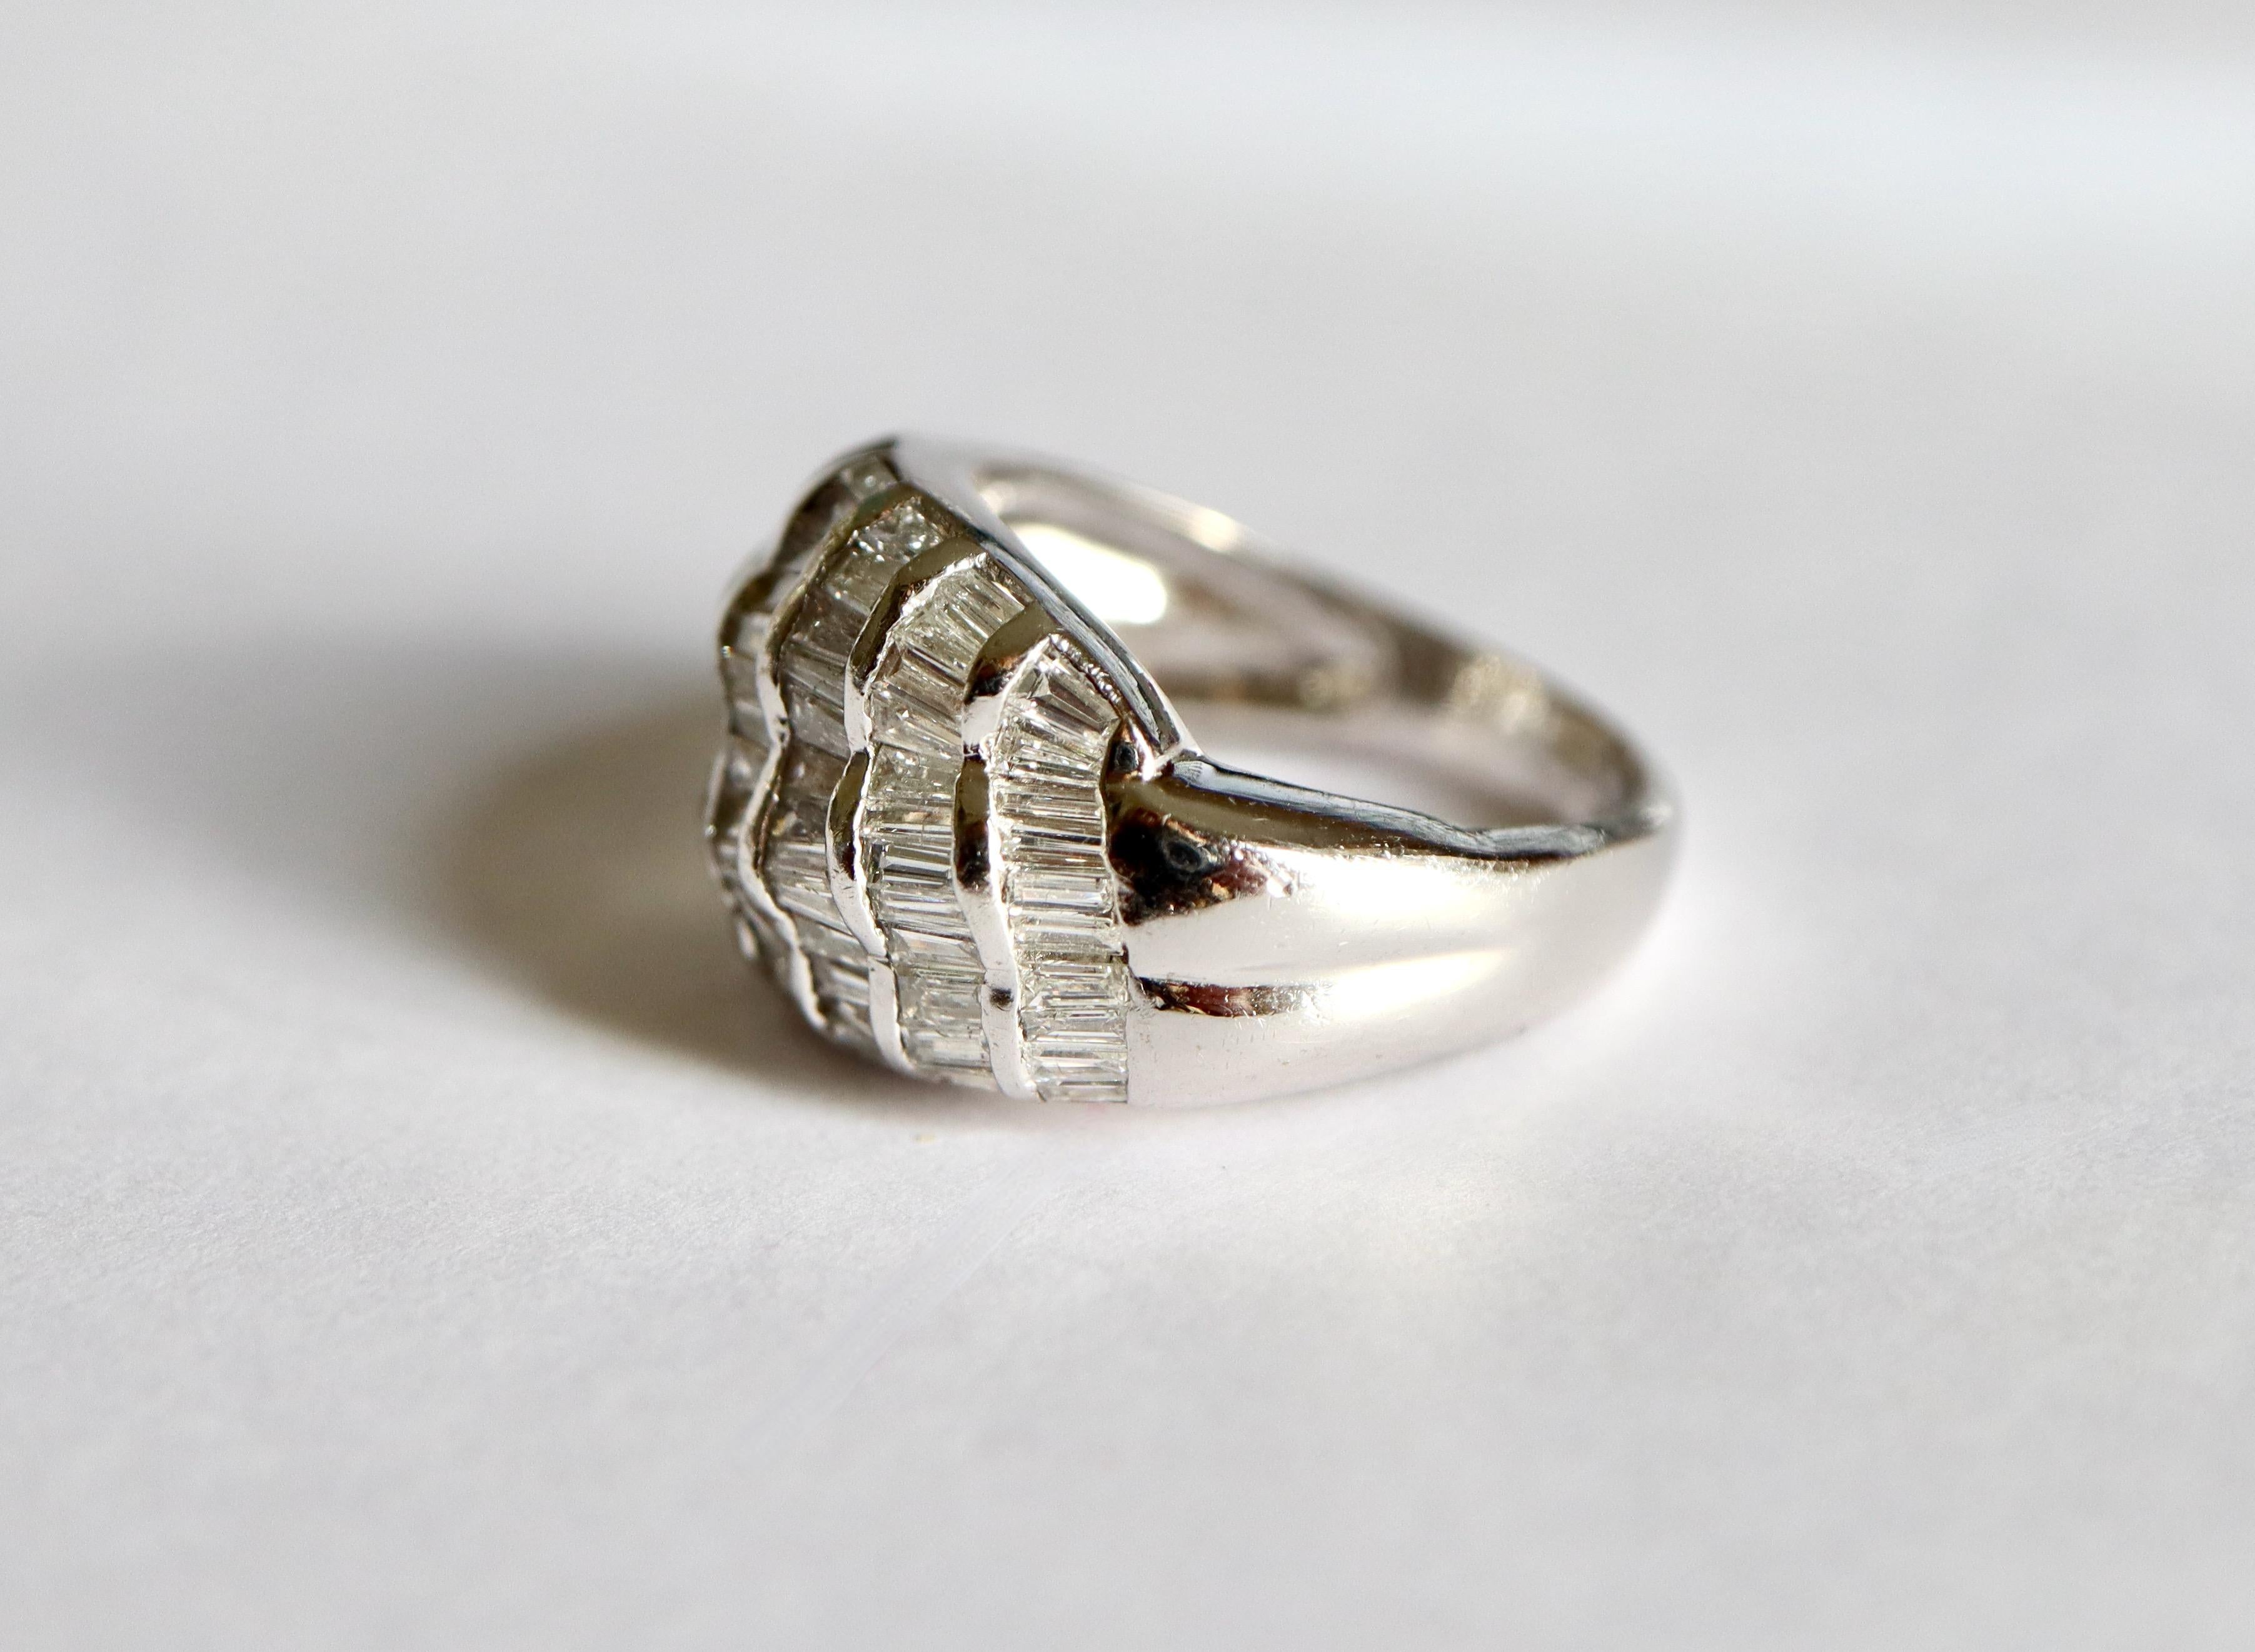 Ring aus 18 Karat Weißgold mit einem Wellenmuster, das mit Diamanten ausgefasst ist. 7 Reihen mit Baguette-Diamanten mit einem Gesamtgewicht von 1,3 bis 1,5 Karat.
Durchmesser: 16,5 mm FR Größe 52 US Größe : 6
Französische Punze : Adlerkopfpunze für